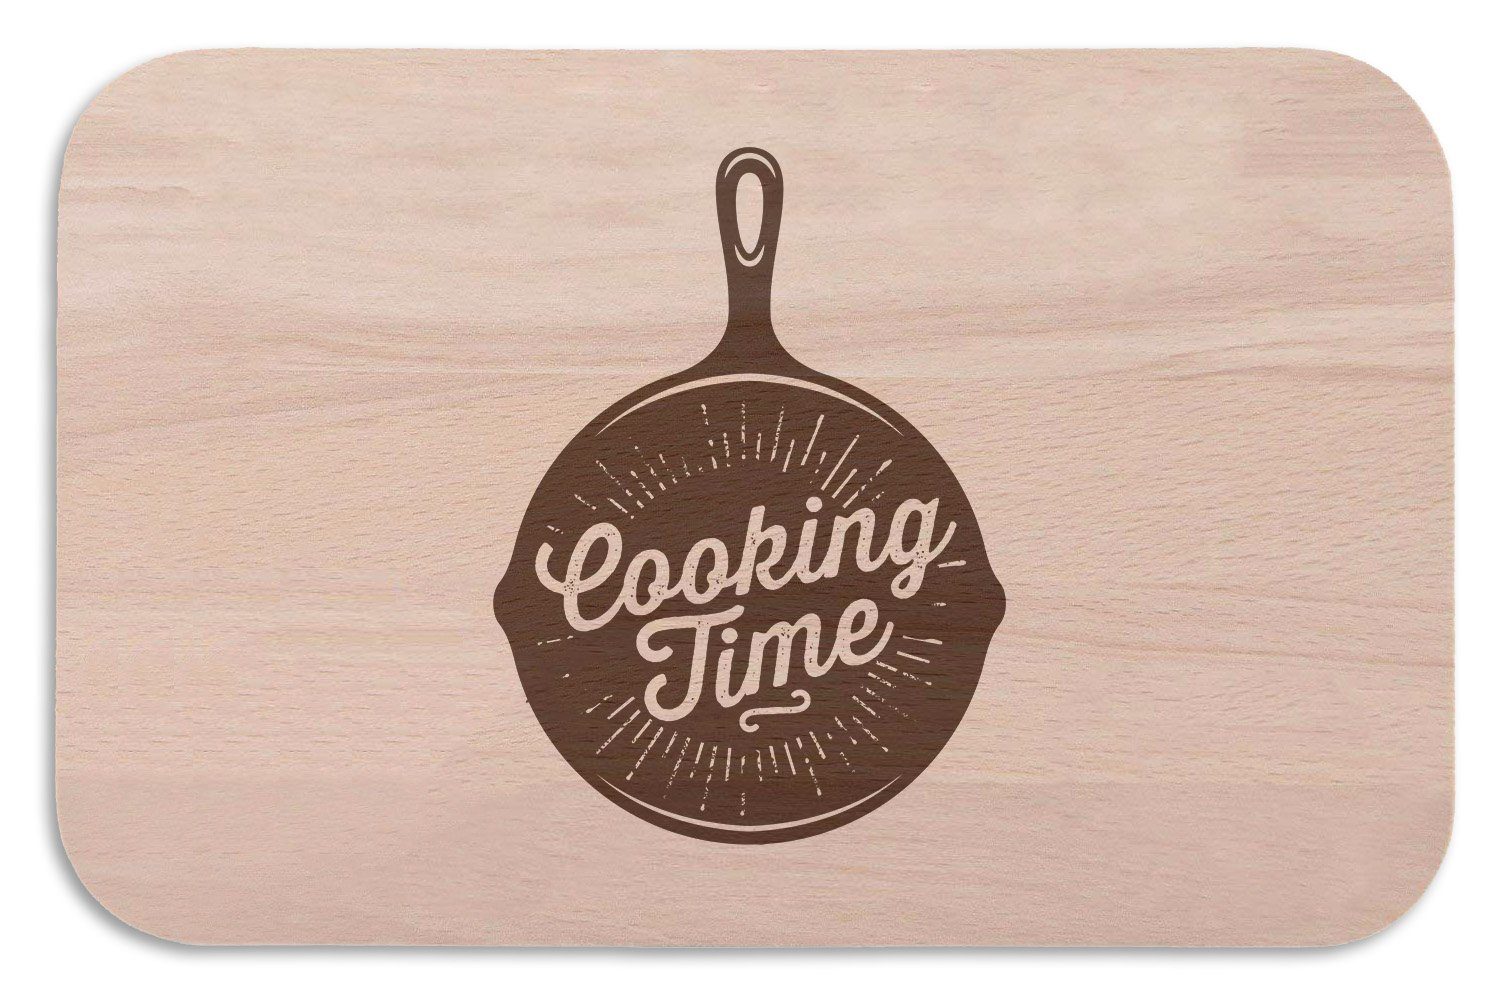 GRAVURZEILE Schneidebrett Frühstücksbrettchen - Cooking Time - Geschenk für den Hobbykoch, (Kein Set)